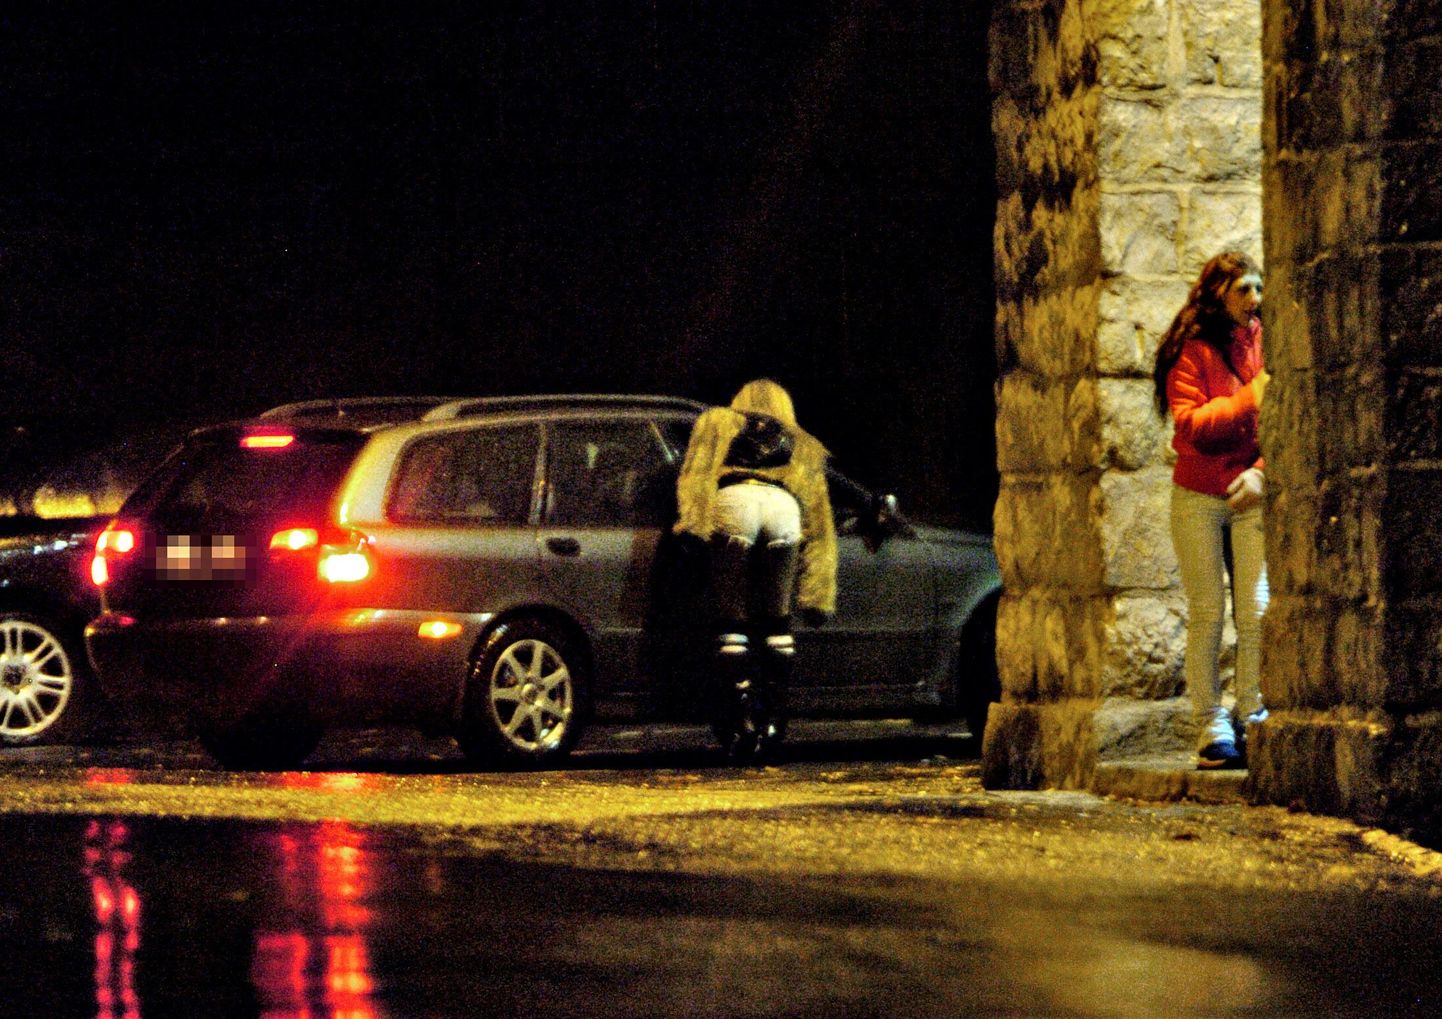 Aafrika päritolu prostituudid lahkuvad Norrast